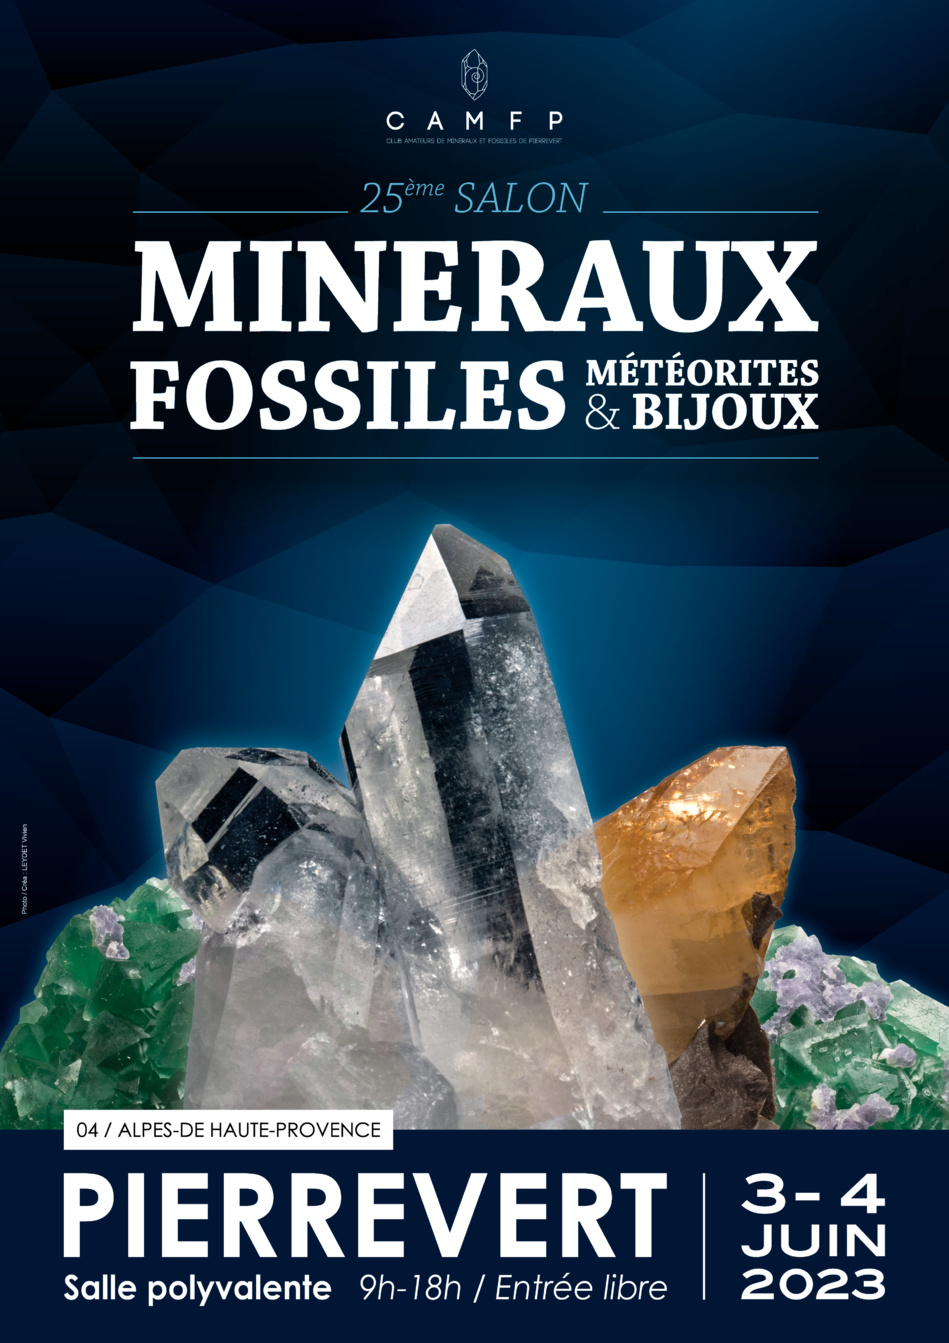 25e salon des Minéraux, Fossiles et Bijoux les 3 et 4 juin à Pierrevert